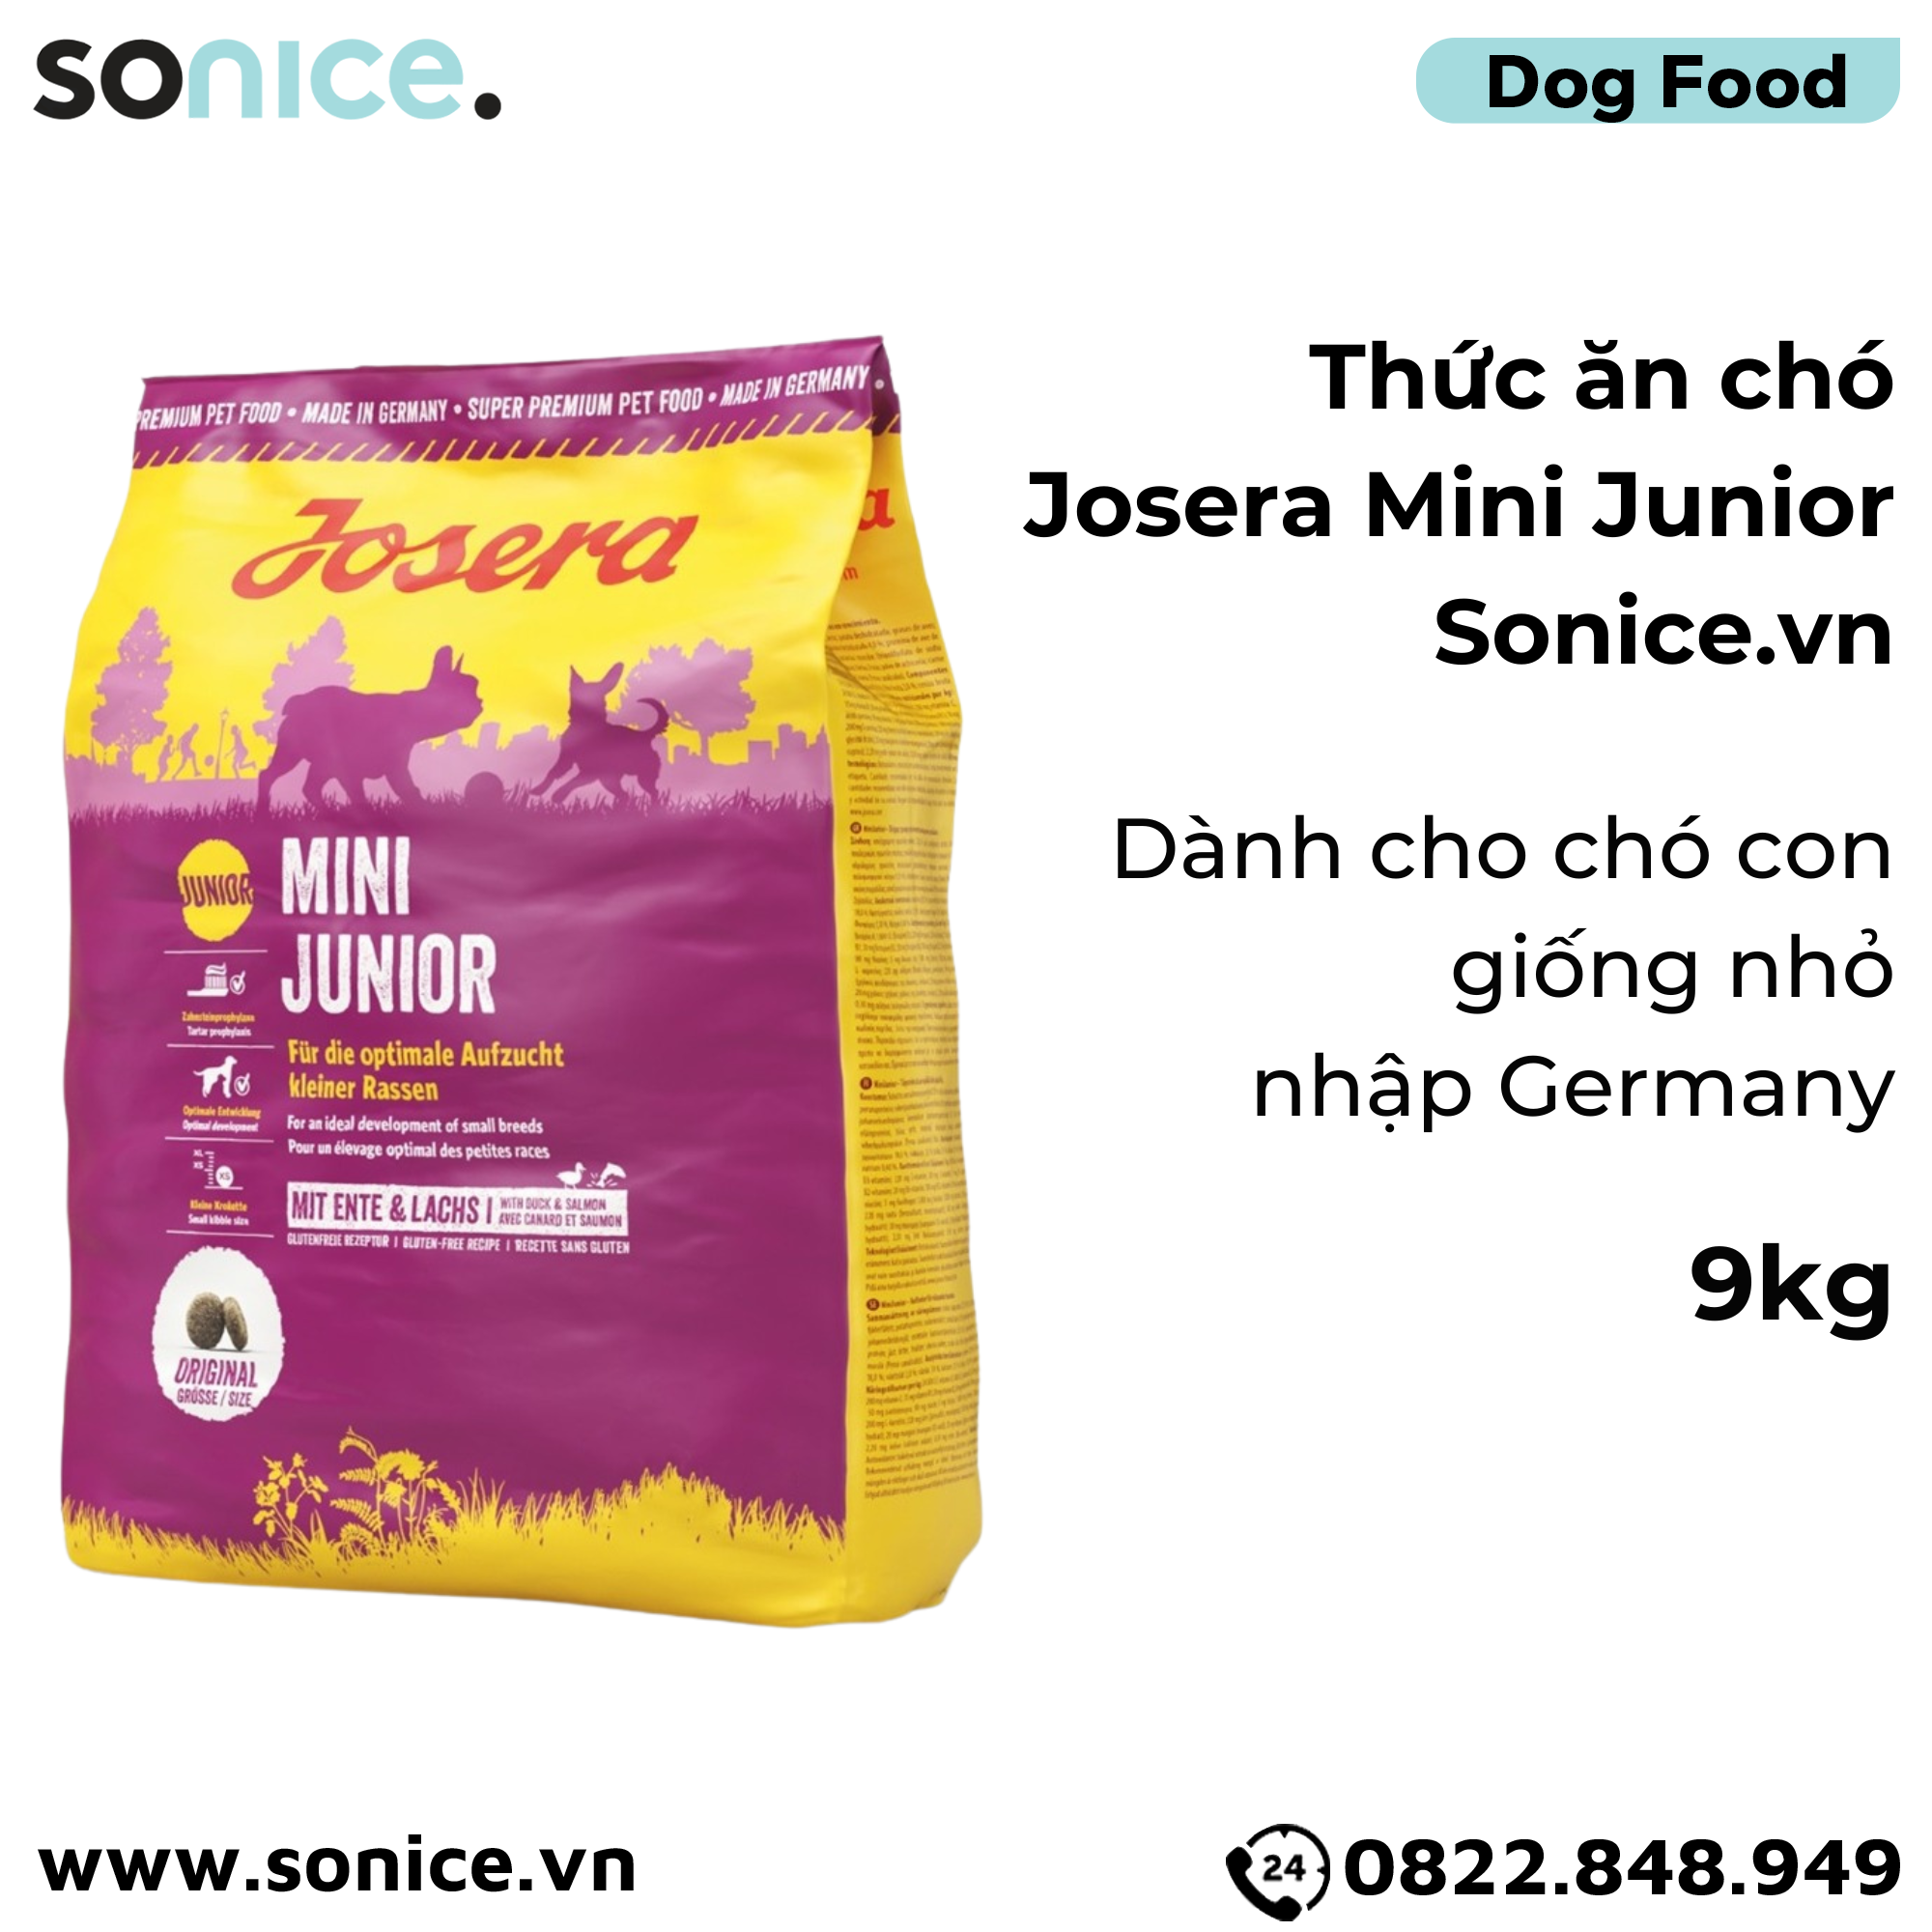  Thức ăn chó Josera Mini Junior 9kg - chó con giống nhỏ nhập Germany SONICE. 